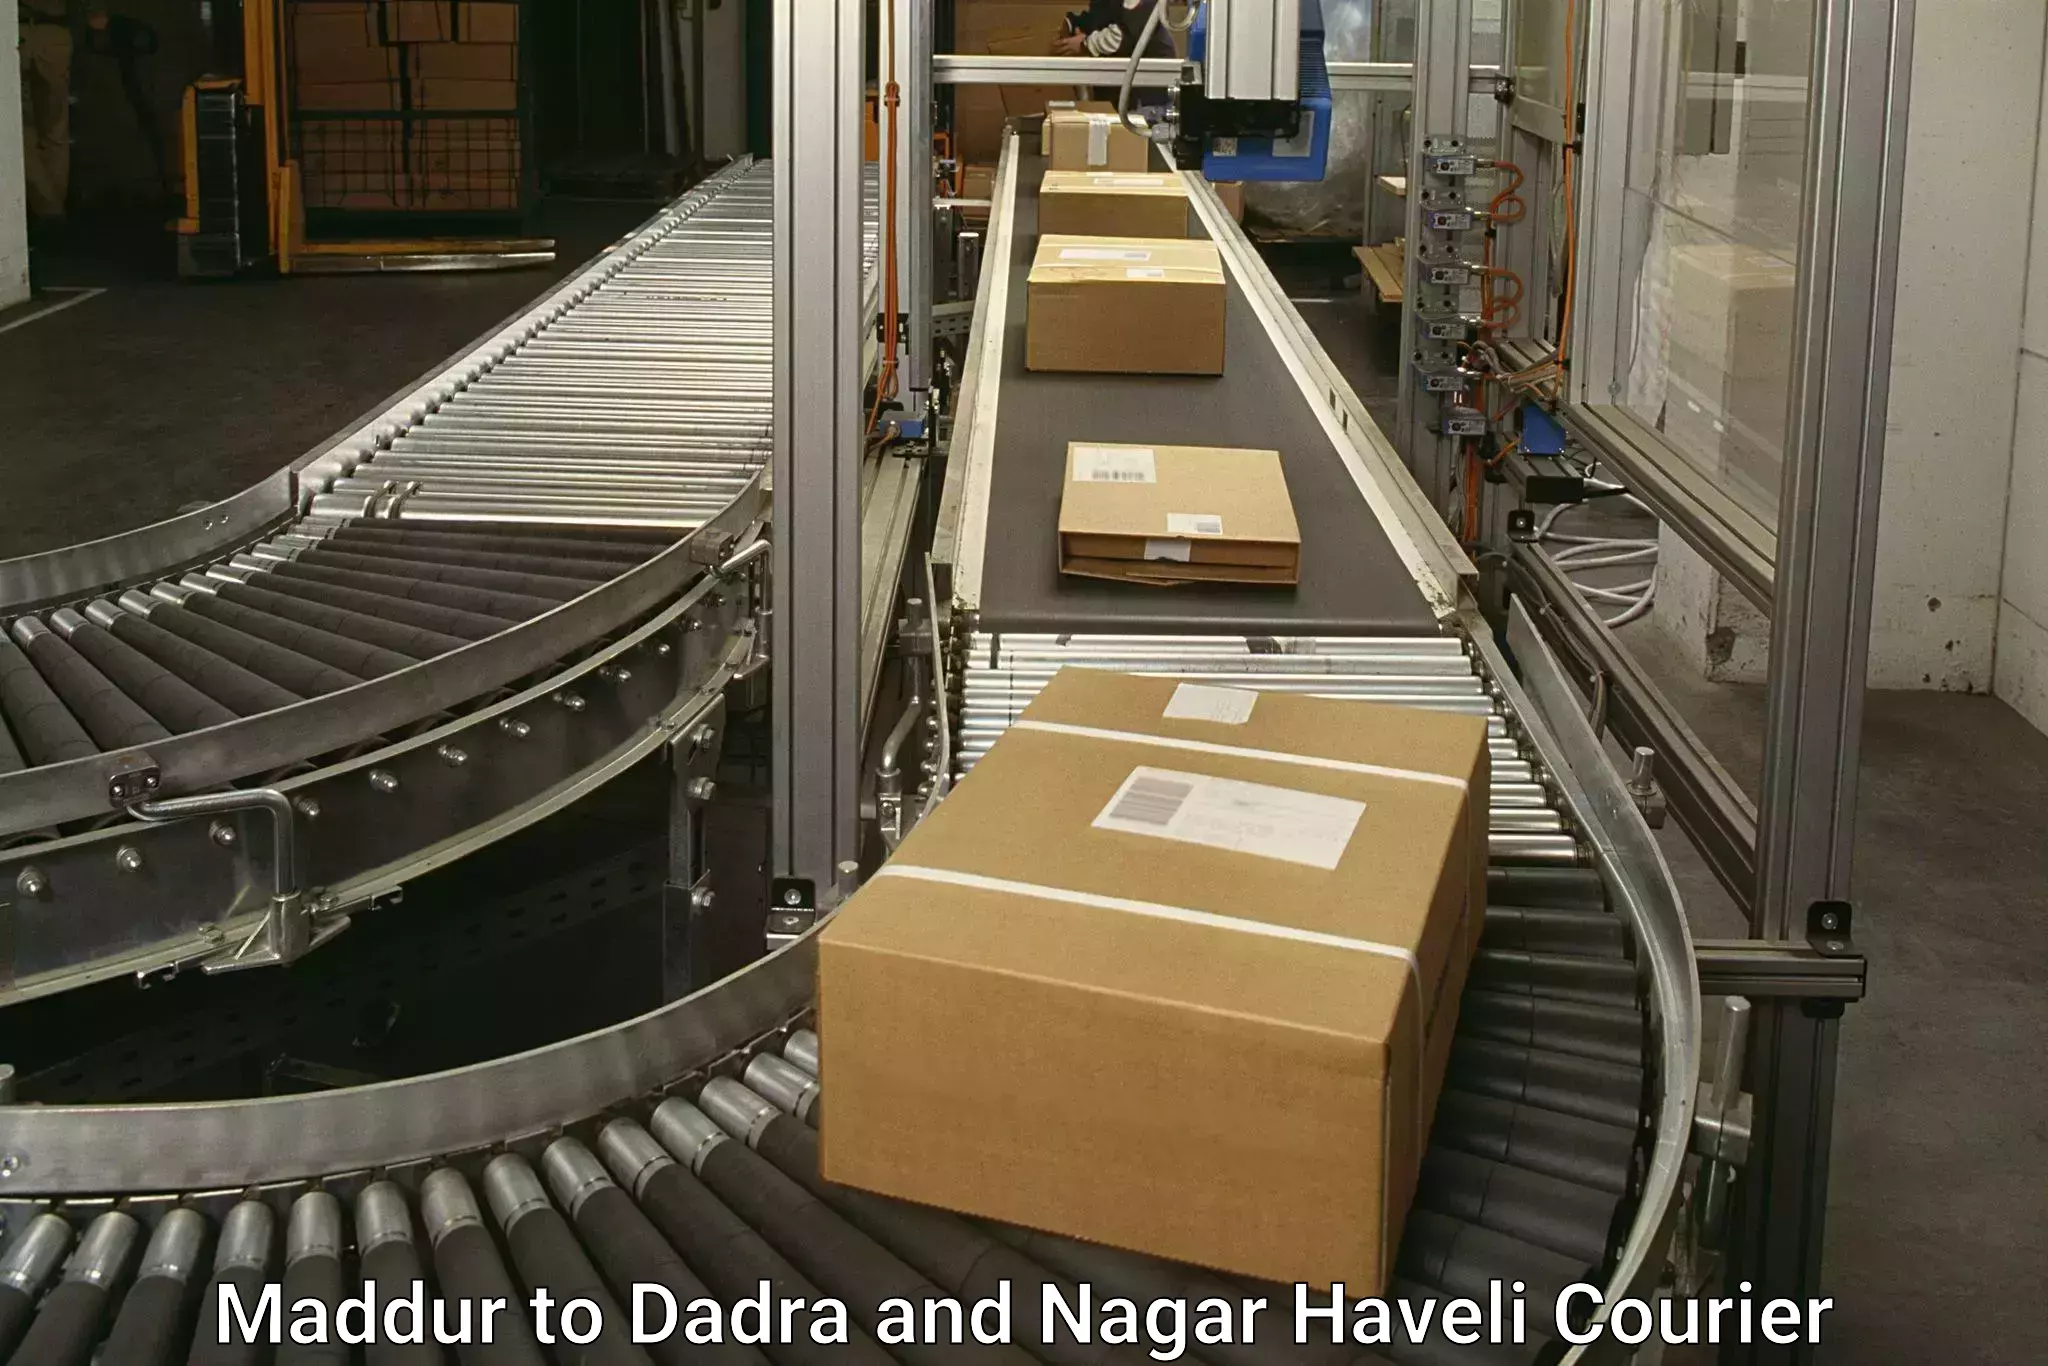 Door-to-door freight service Maddur to Dadra and Nagar Haveli